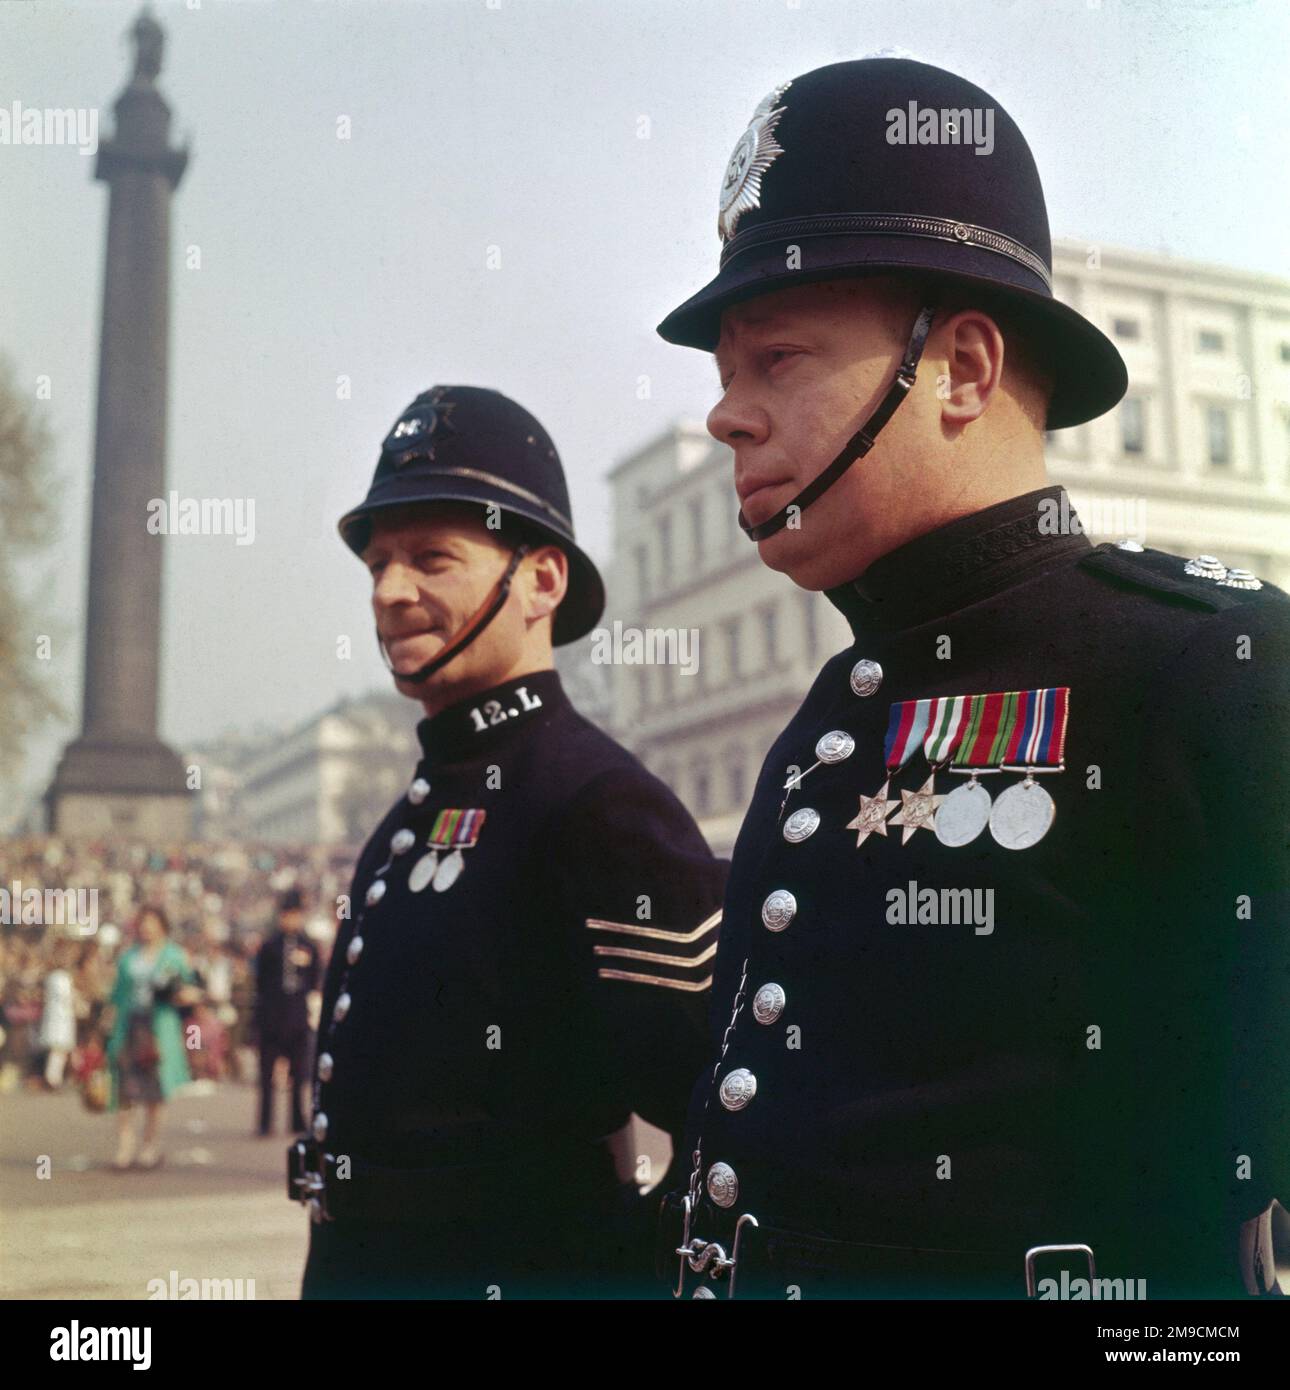 Zwei Polizisten, beide mit Medaillen geschmückt, stehen zusammen im Dienst am Trafalgar Square, London, England. Stockfoto